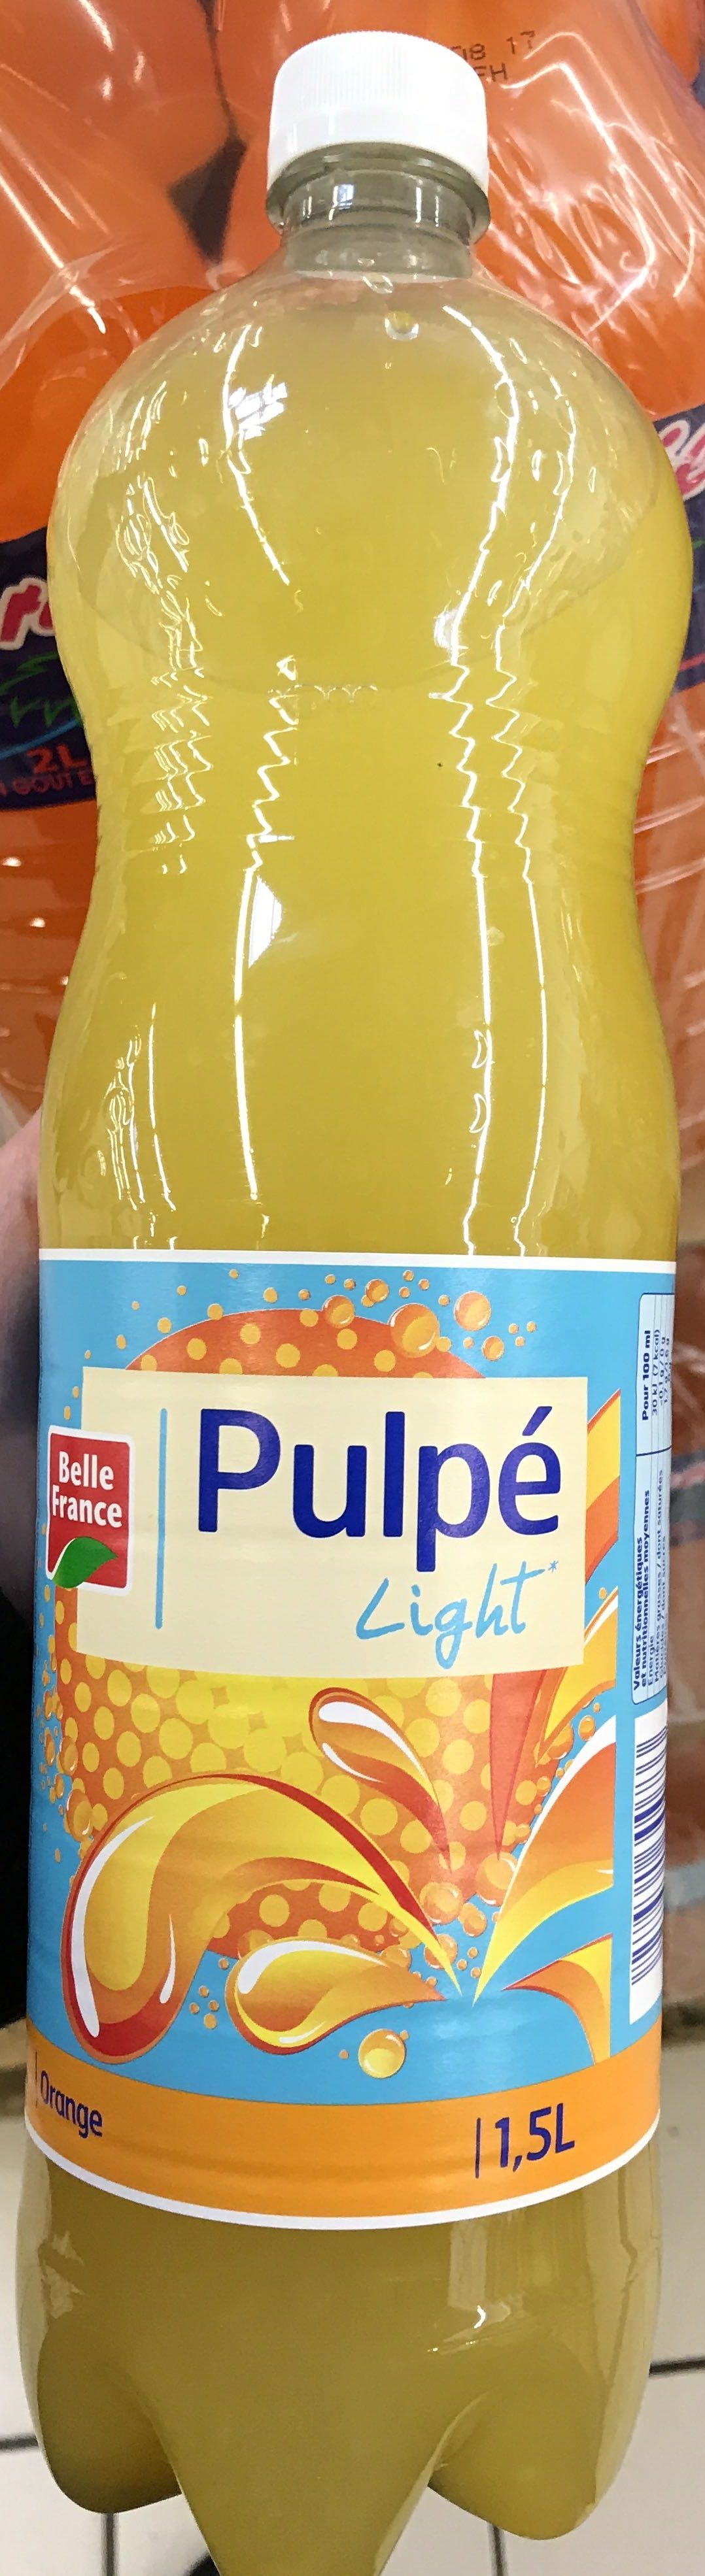 Pulpé light - Produkt - fr